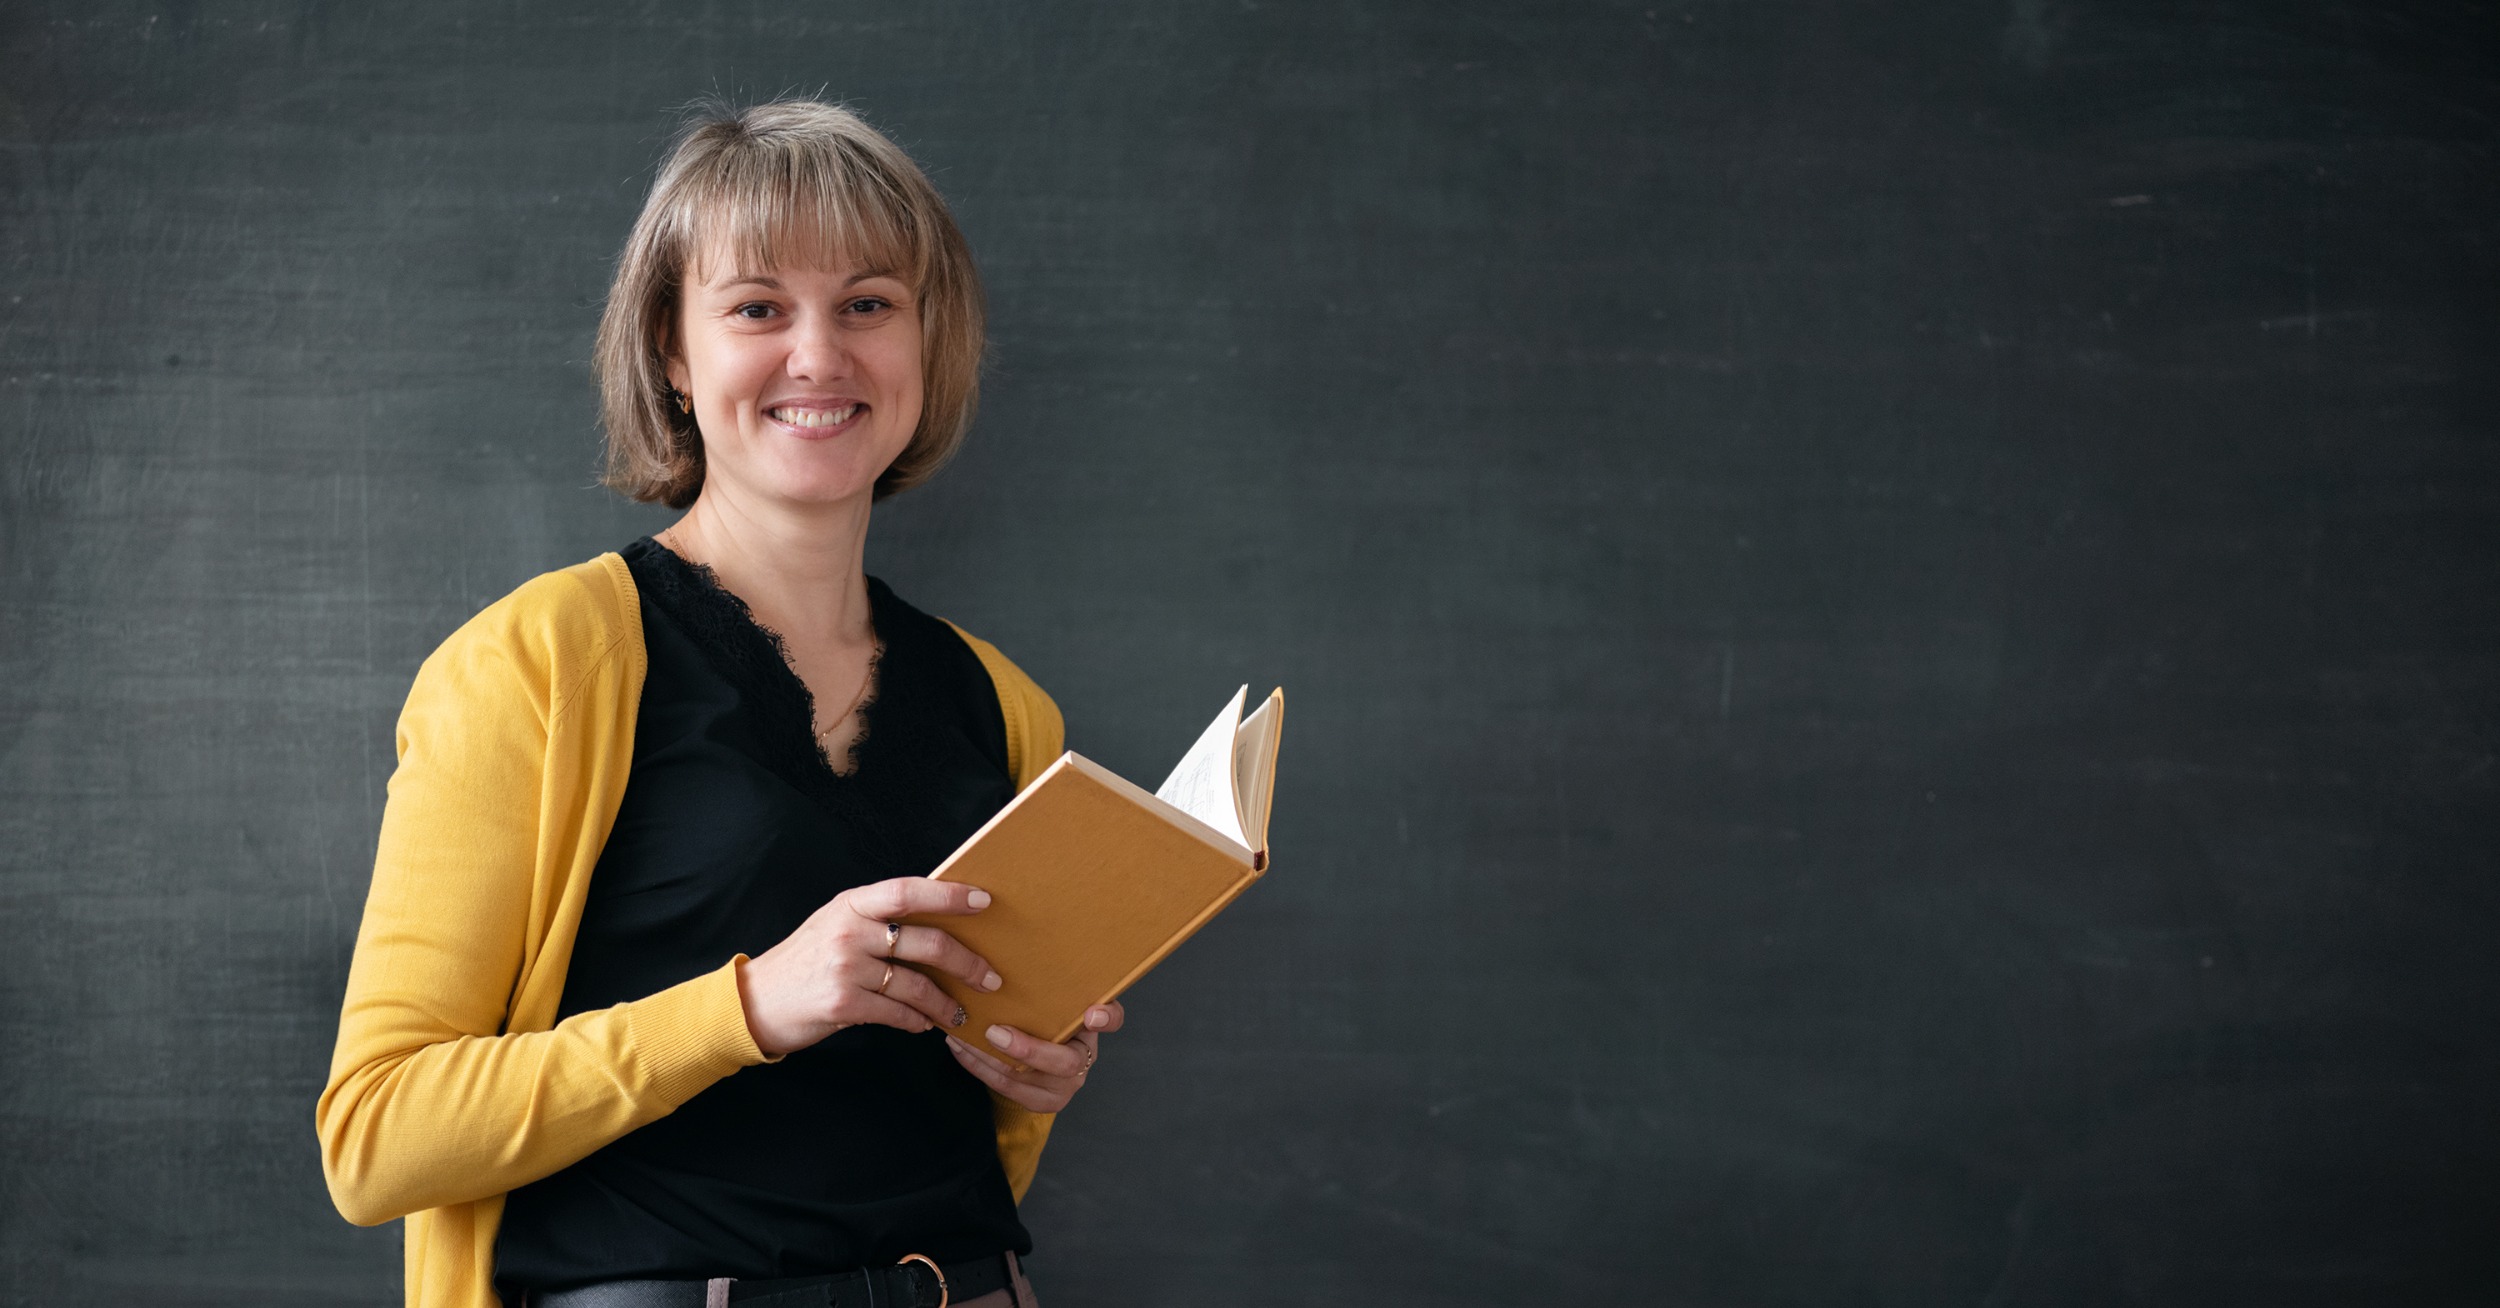 Riconoscimento titolo estero, docente straniera in primo piano con libro in mano e lavagna sullo sfondo